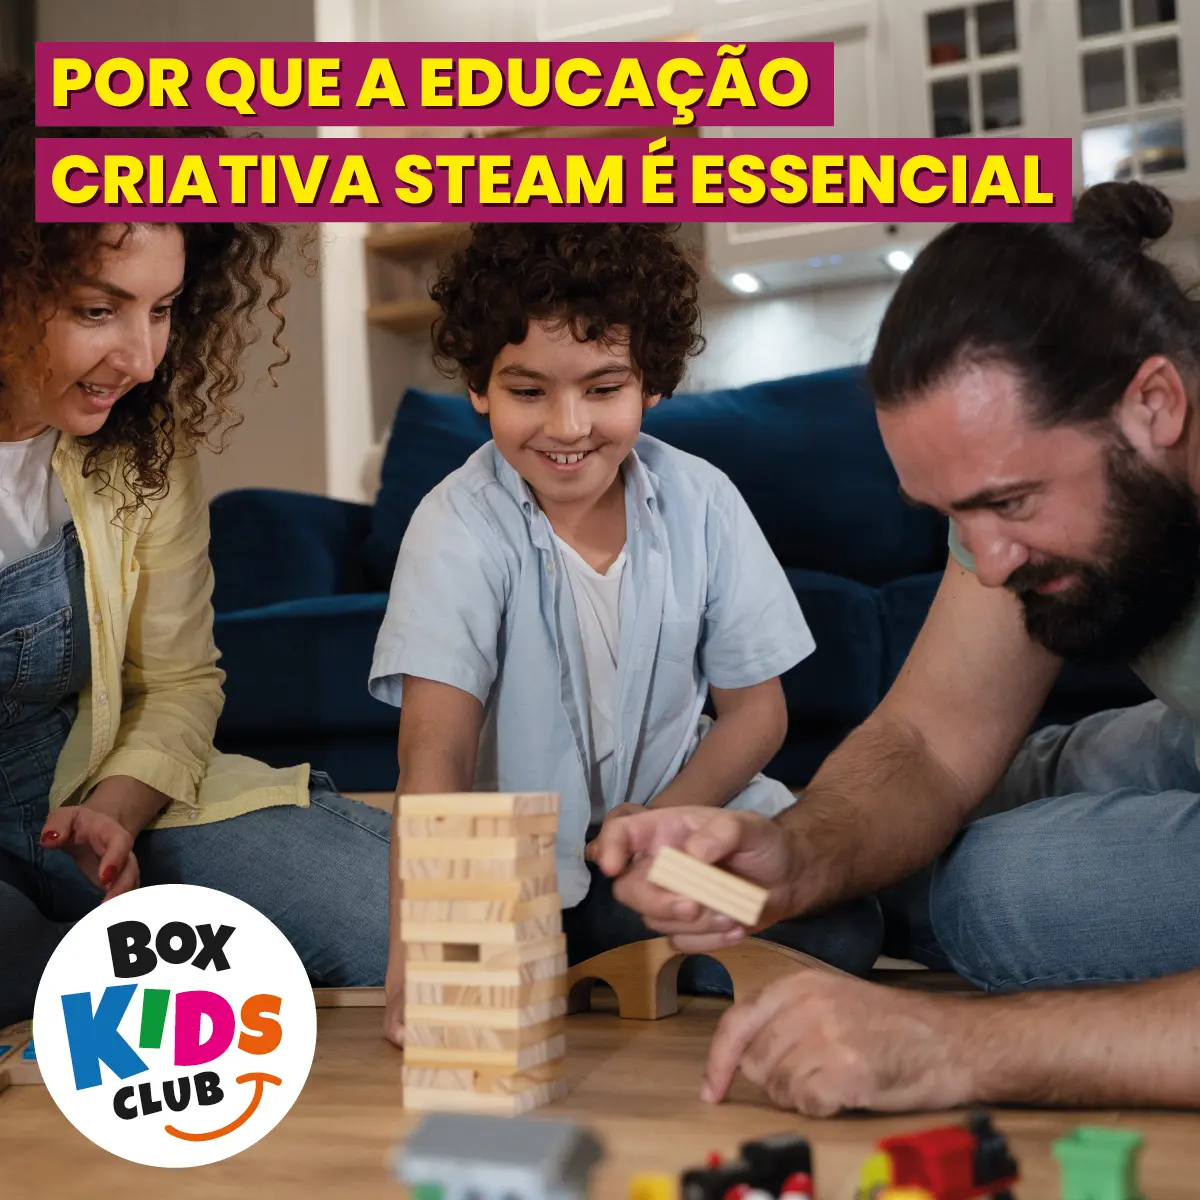 Box Kids Club Clube de Assinatura de Criatividade e Leitura para Crianças - Educação STEAM_Prancheta 1